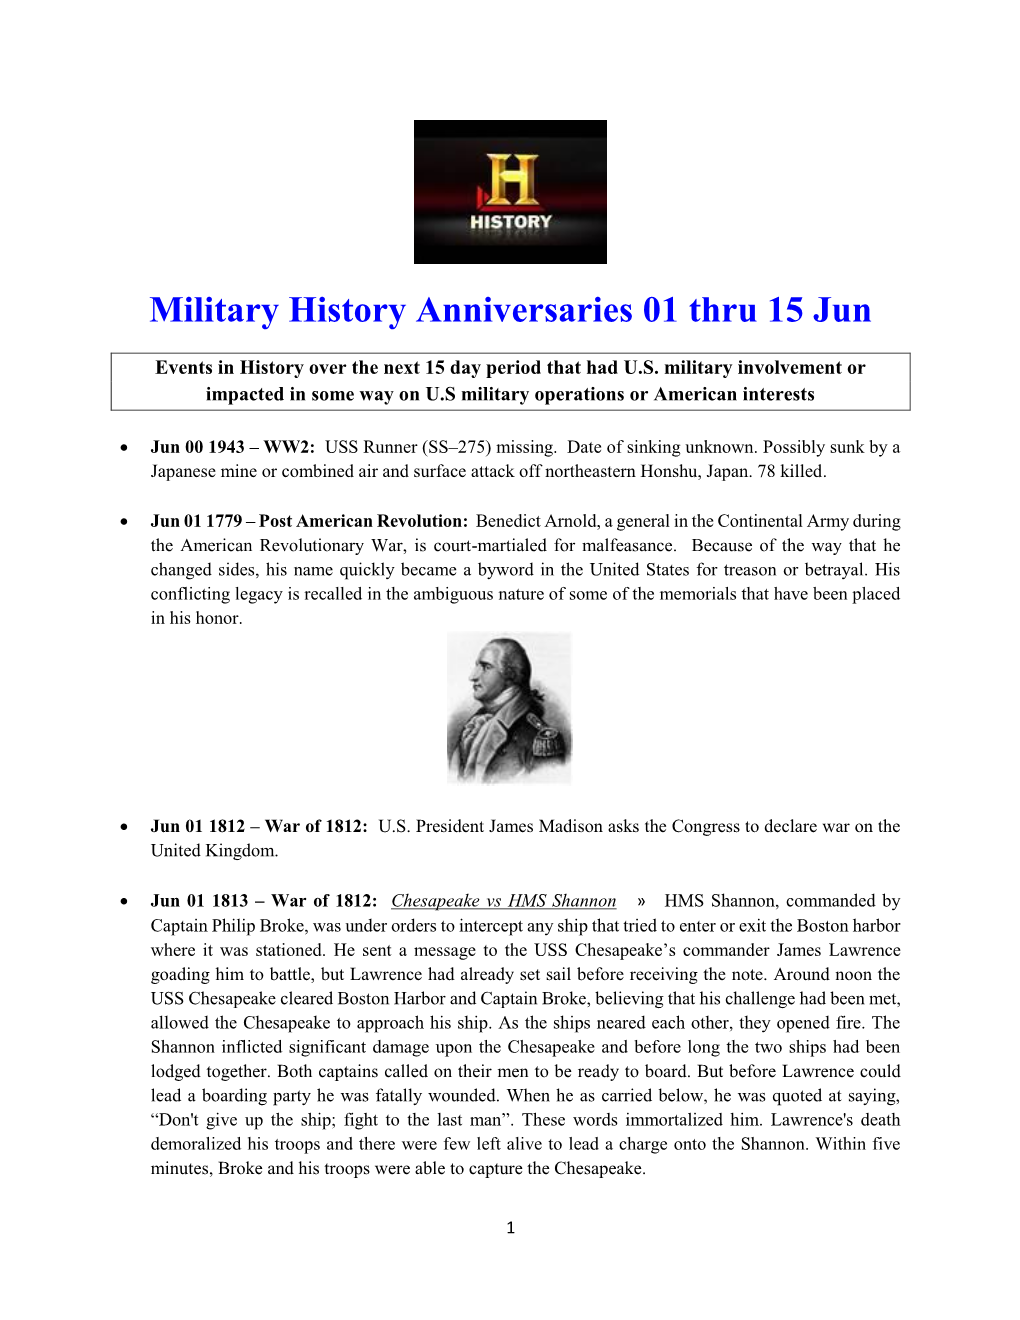 Military History Anniversaries 0601 Thru 061520